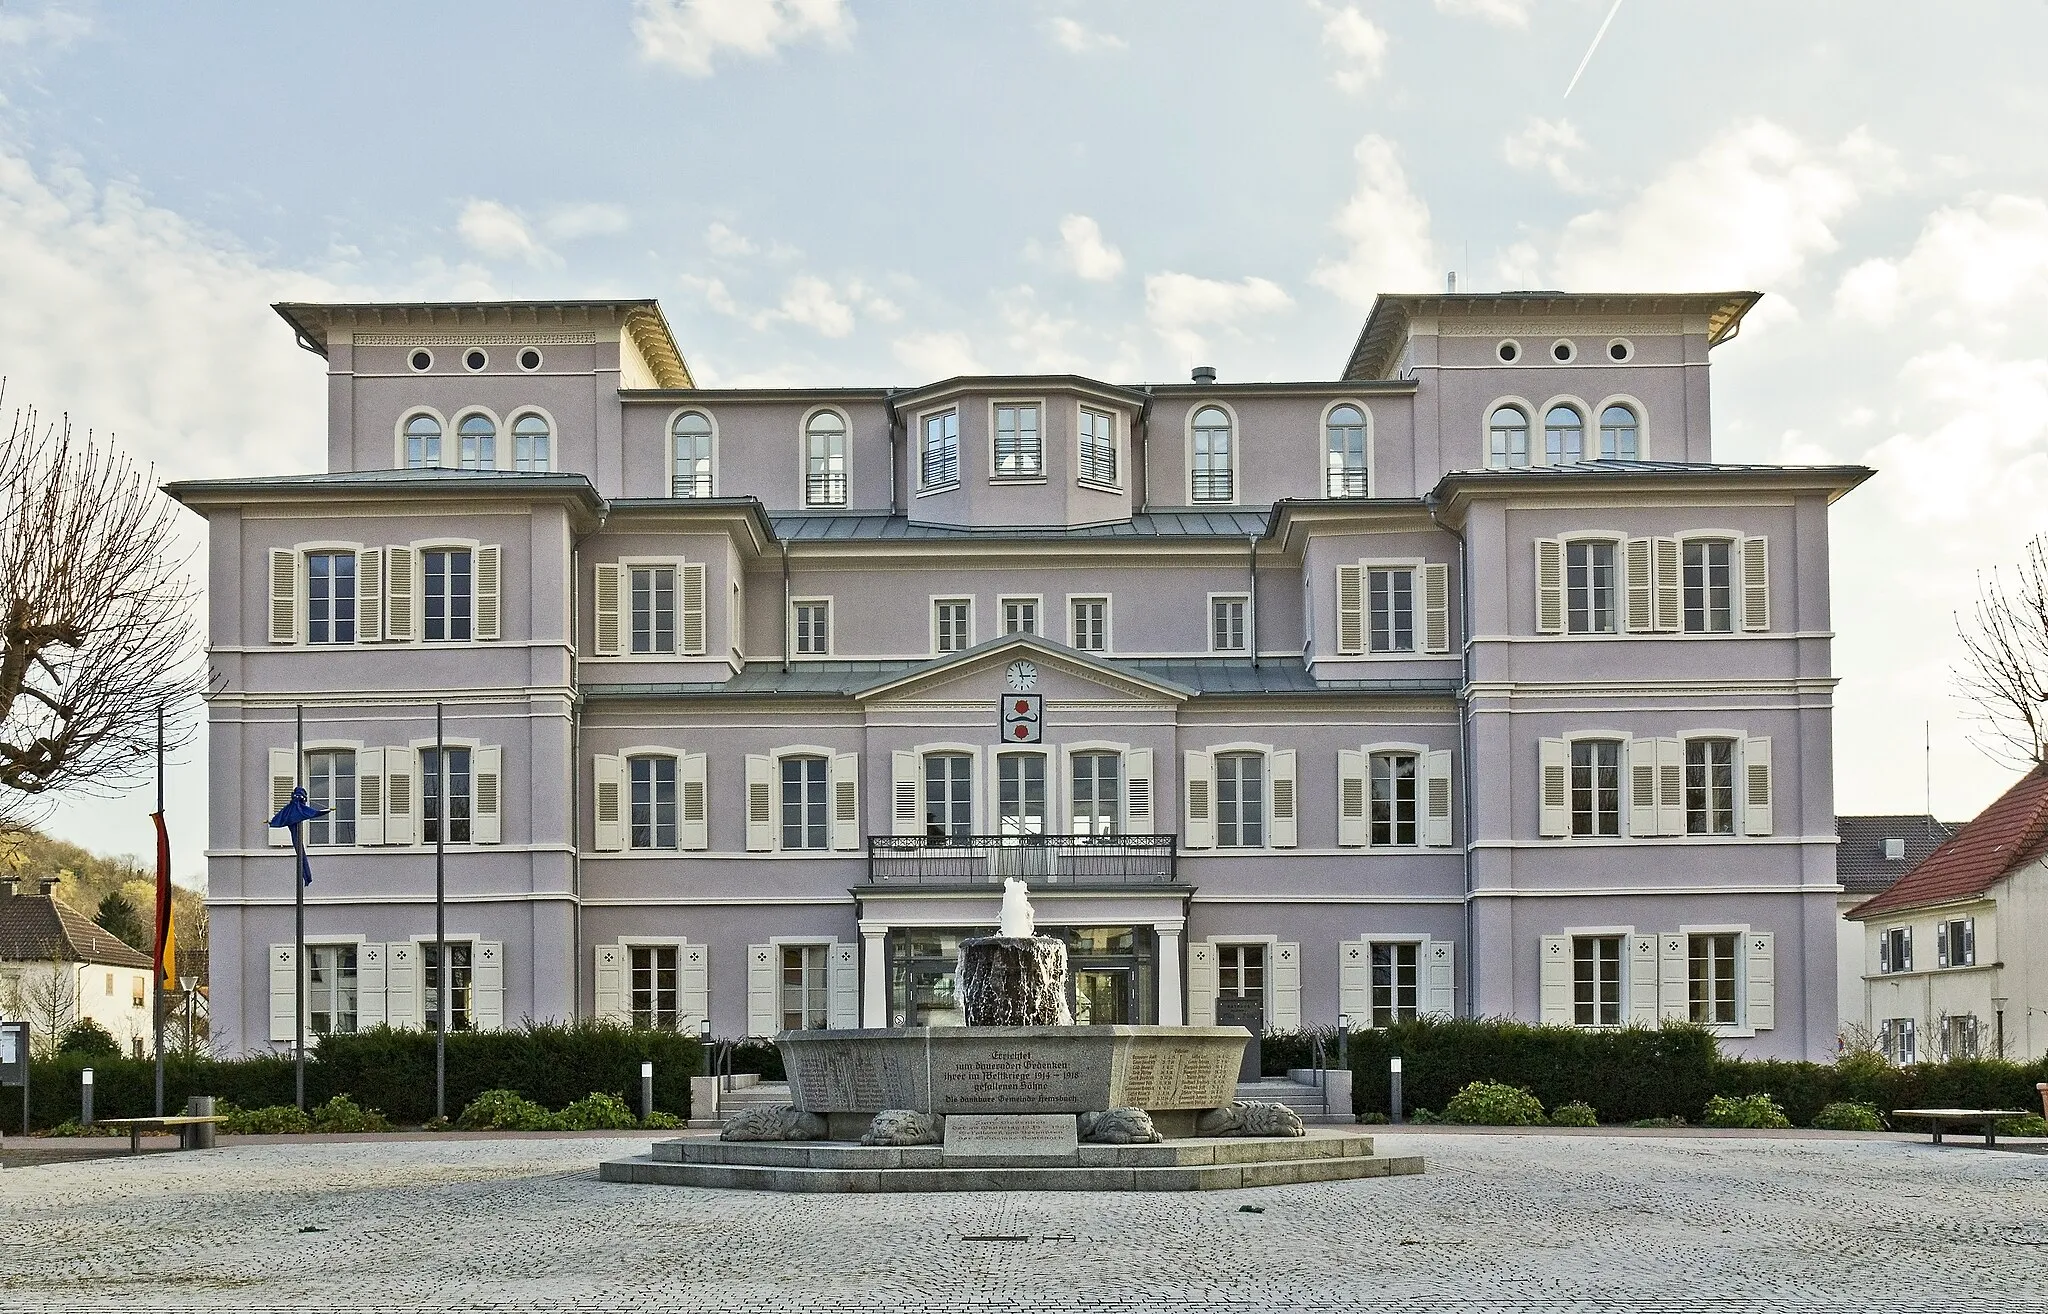 Photo showing: Hemsbach, Rothschild-Schloss / Rathaus, 1764 vom kurfürstlichen Jagdrat Besen erbaut (mittlerer Trakt), 1839 erworben von Baron Rothschild, durch Park erweitert und zum heutigen Erscheinungsbild umgebaut.